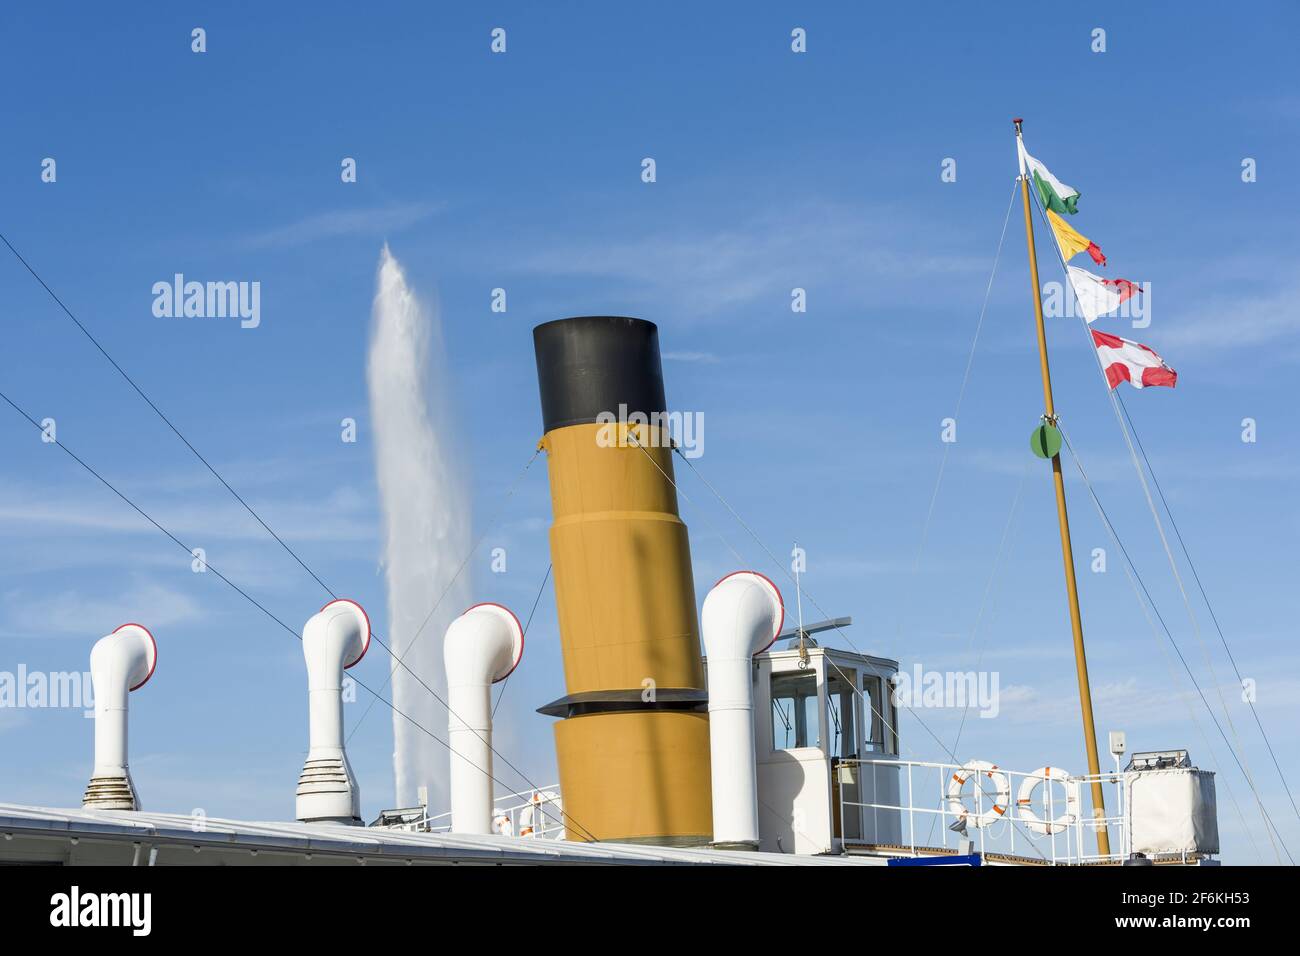 Schornstein und Flagge auf einem Dampfschiff auf dem Genfer See, Schweiz  Stockfotografie - Alamy